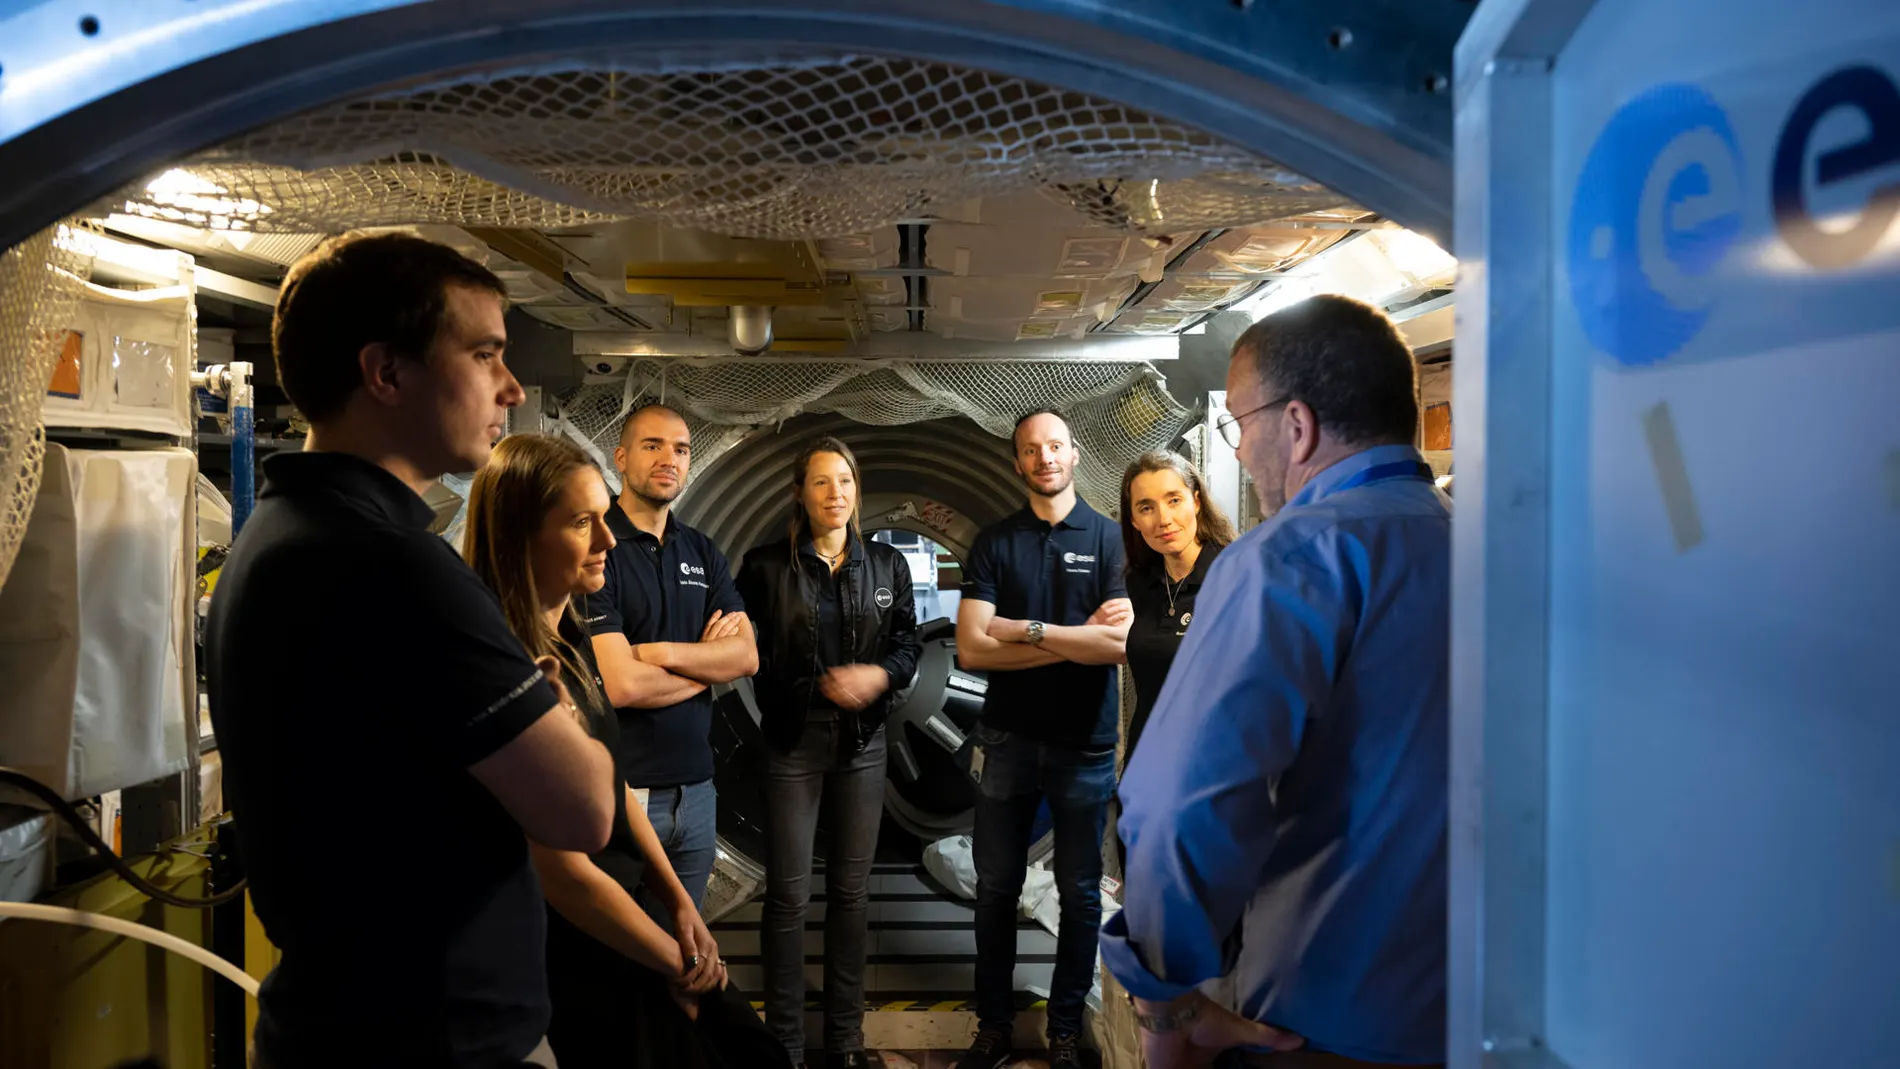 El leonés Pablo Álvarez empieza el entrenamiento básico como candidato a astronauta de la Agencia Espacial Europea